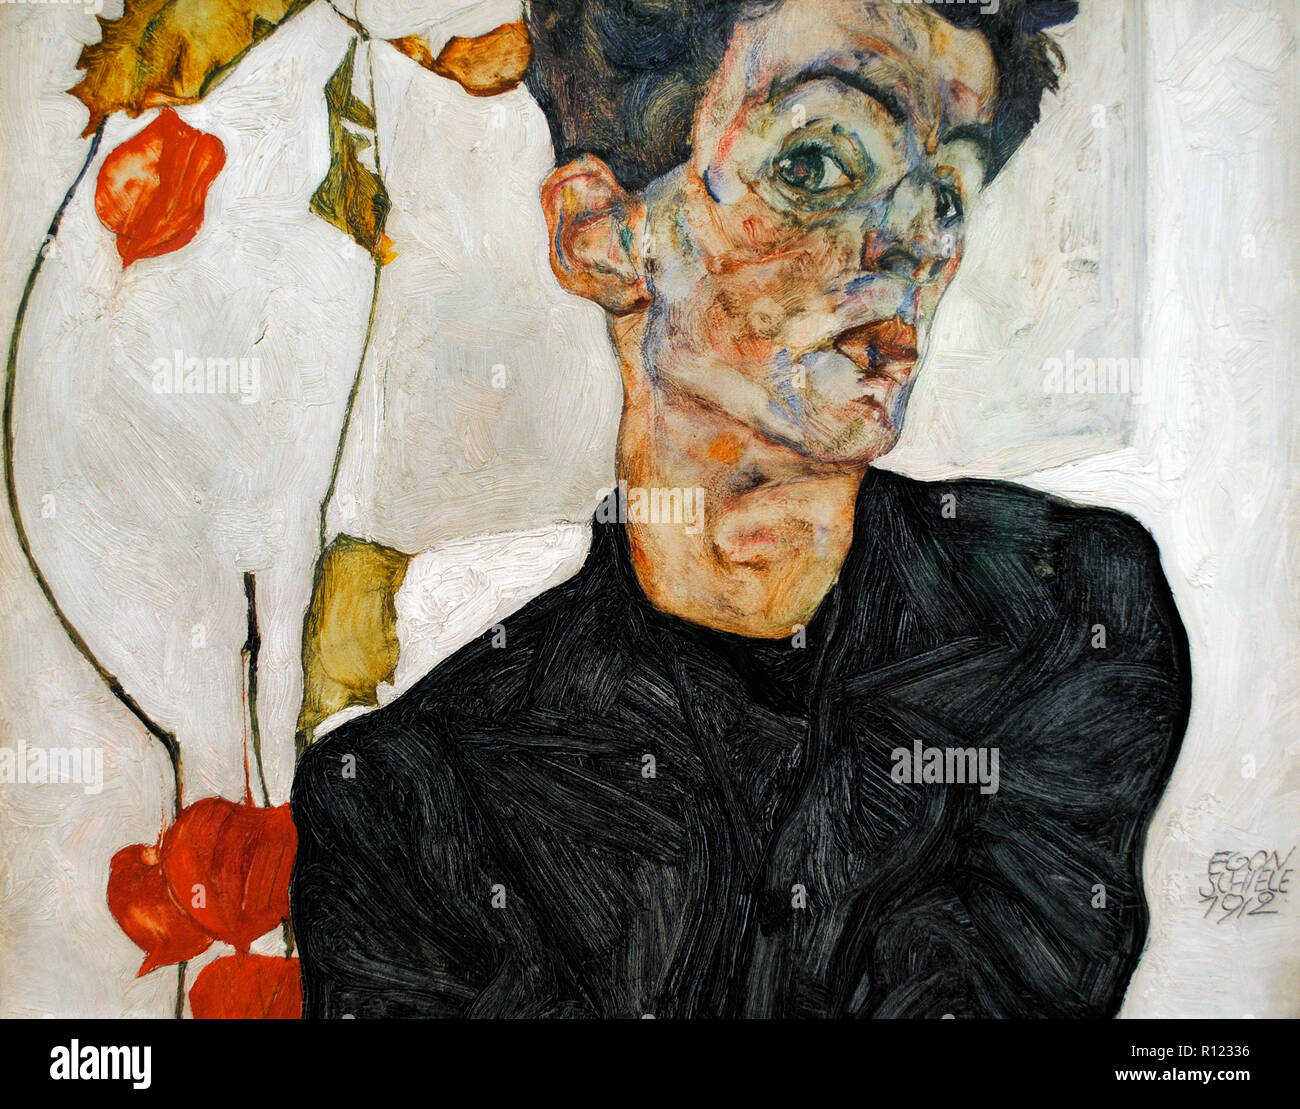 Egon Schiele (Tulln, 1890-Vienne, 1918). Peintre expressionniste autrichien. Self-portrait with Chinese Lantern Plante, 1912. 32,4 x 40,2 cm. L'huile et gouaches à bord. Musée Leopold. Vienne, Autriche. Banque D'Images